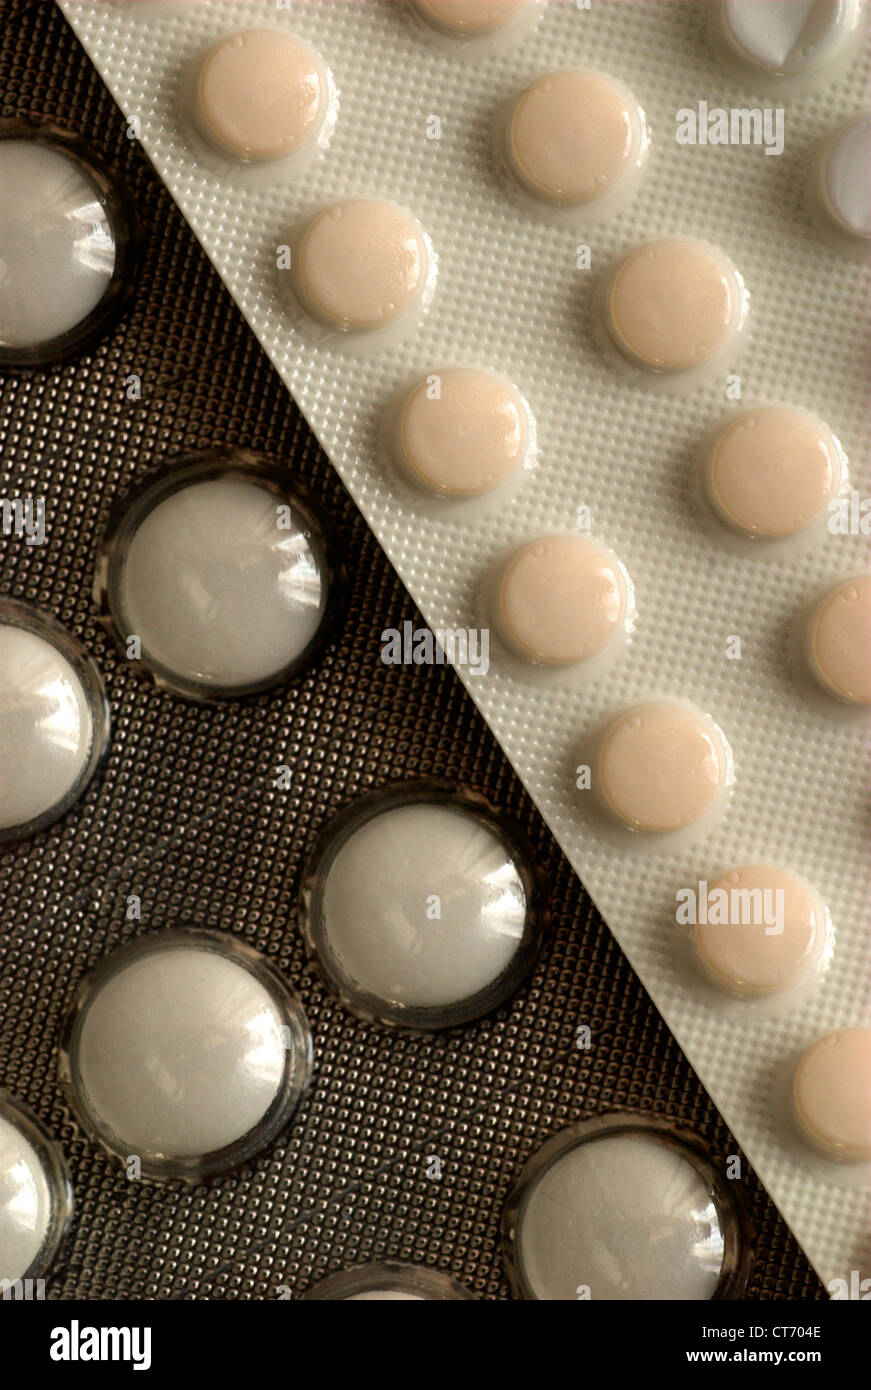 Standard-Image von medizinischen Tabletten / Pillen. Stockfoto